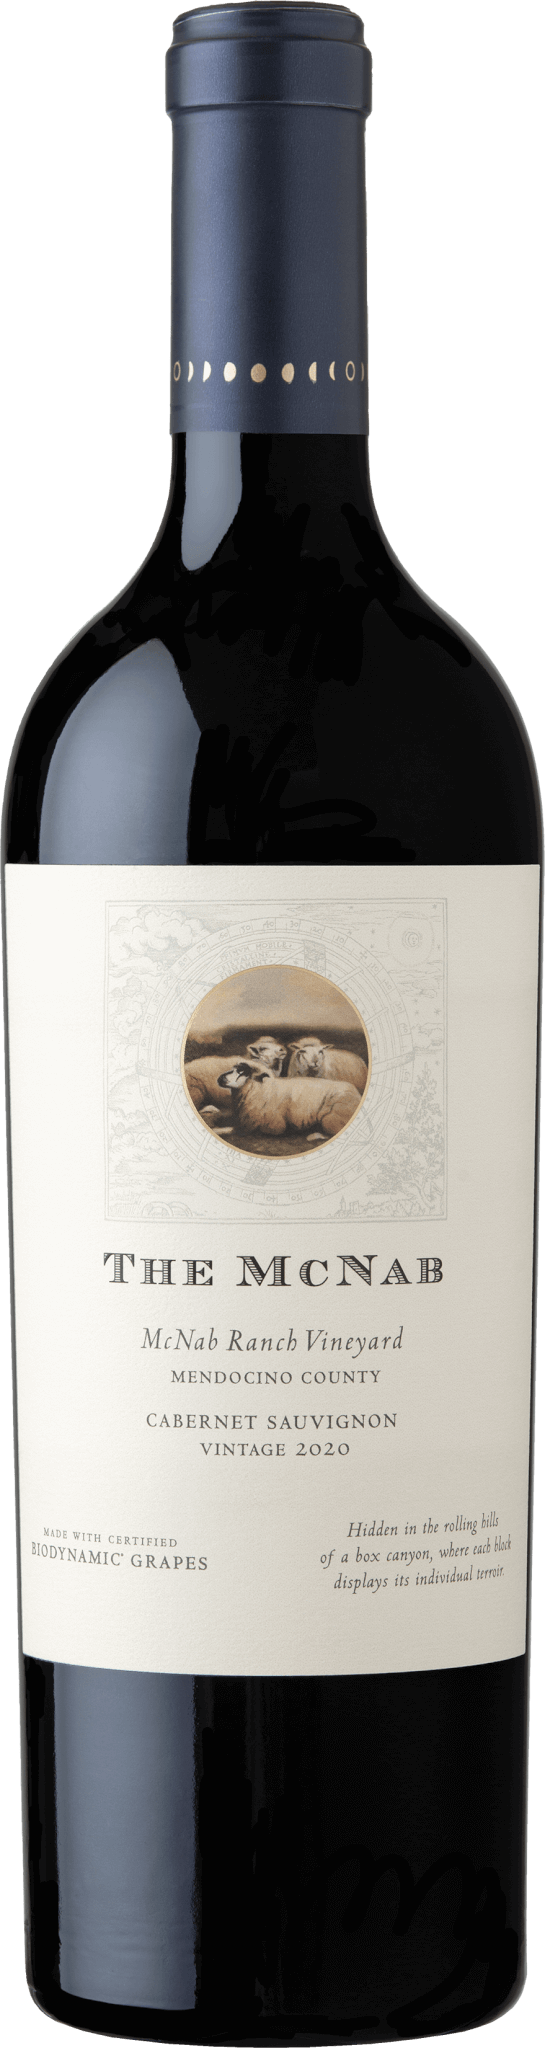 The McNab - Cabernet Sauvignon 2020 bottle shot